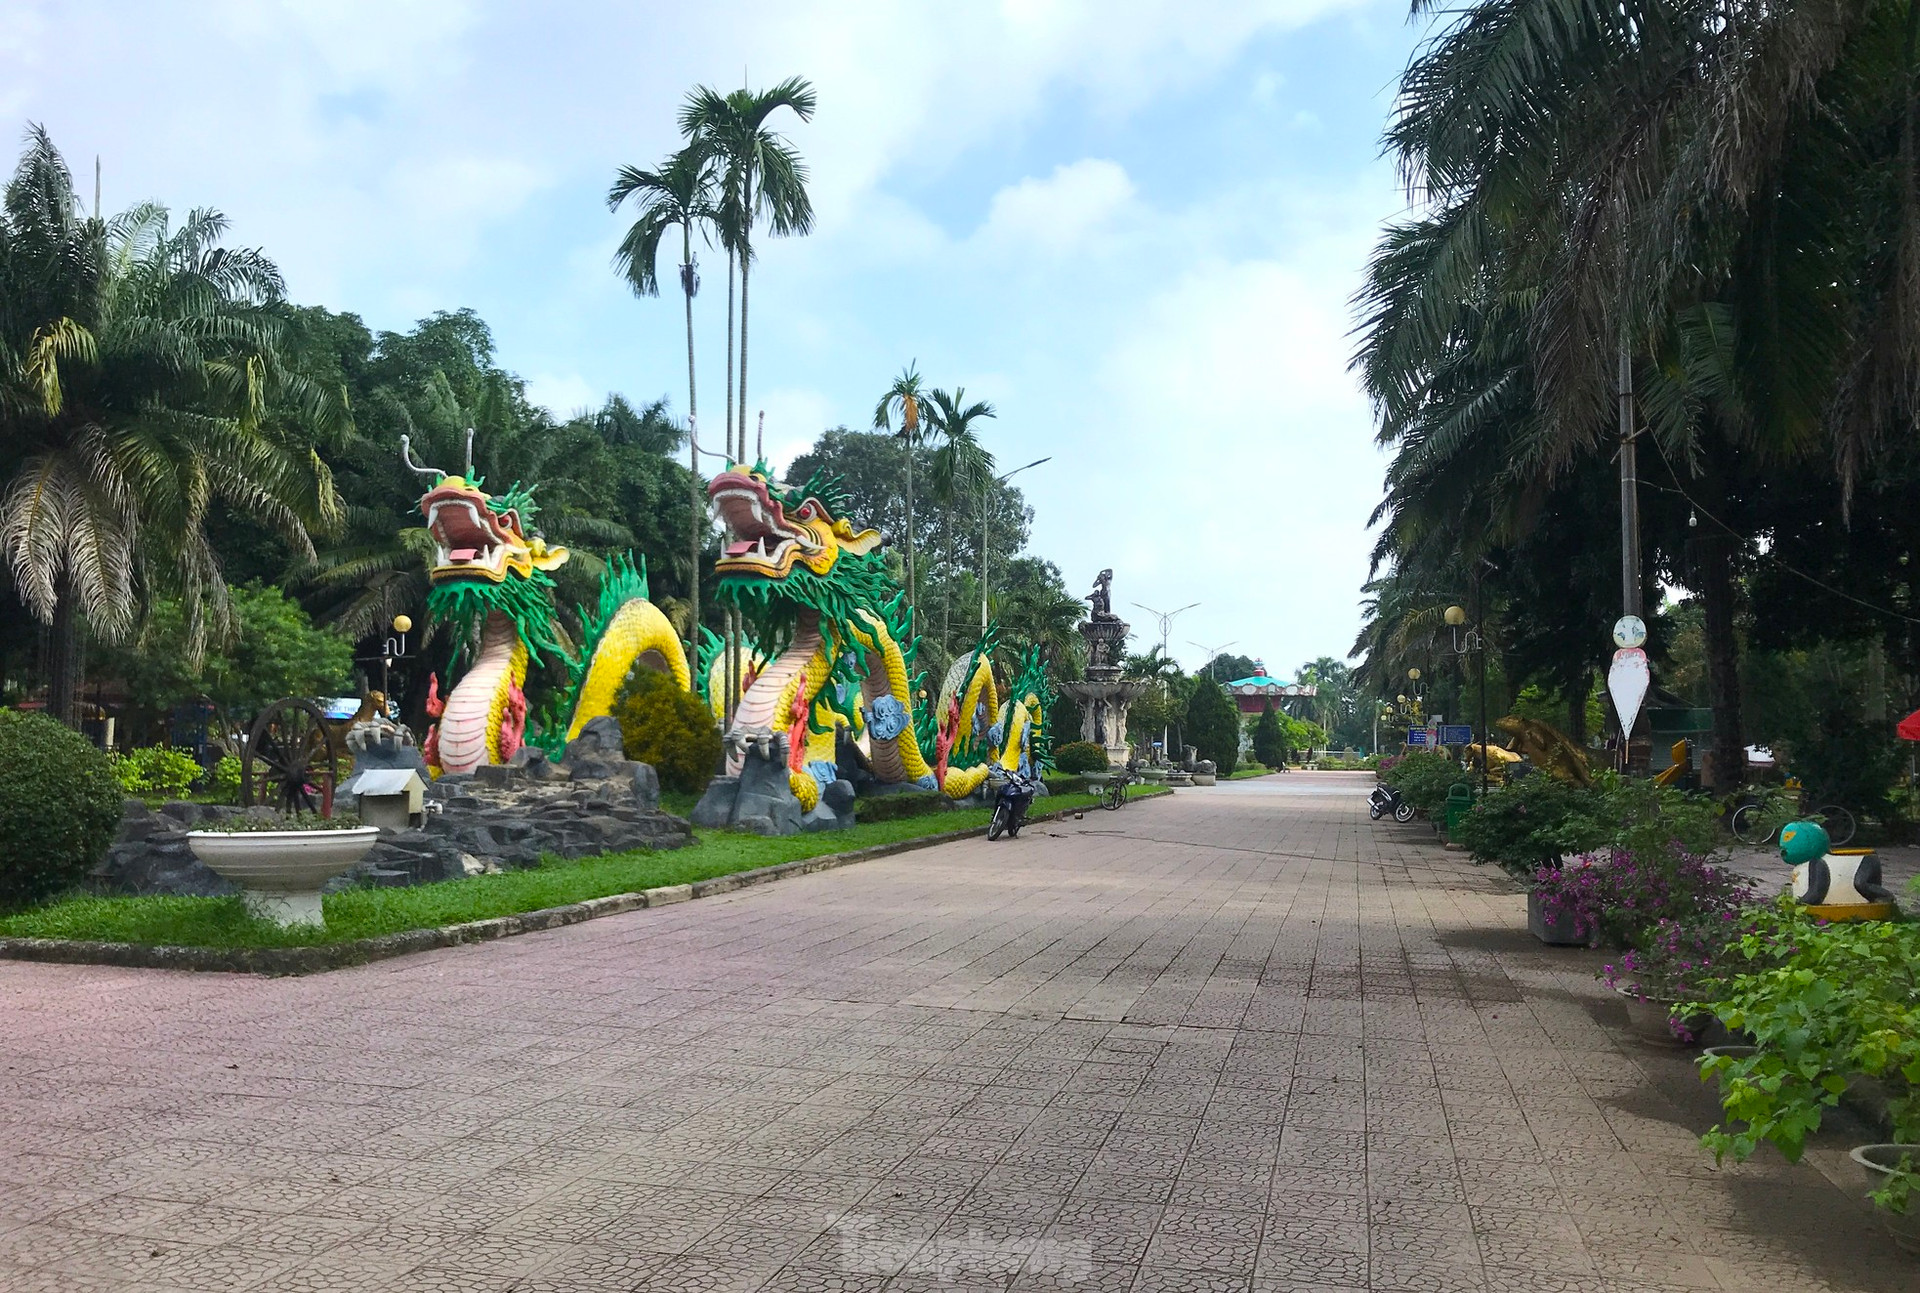 Nỗi lo cá sấu sổng chuồng ở công viên lớn nhất Nghệ An ảnh 1